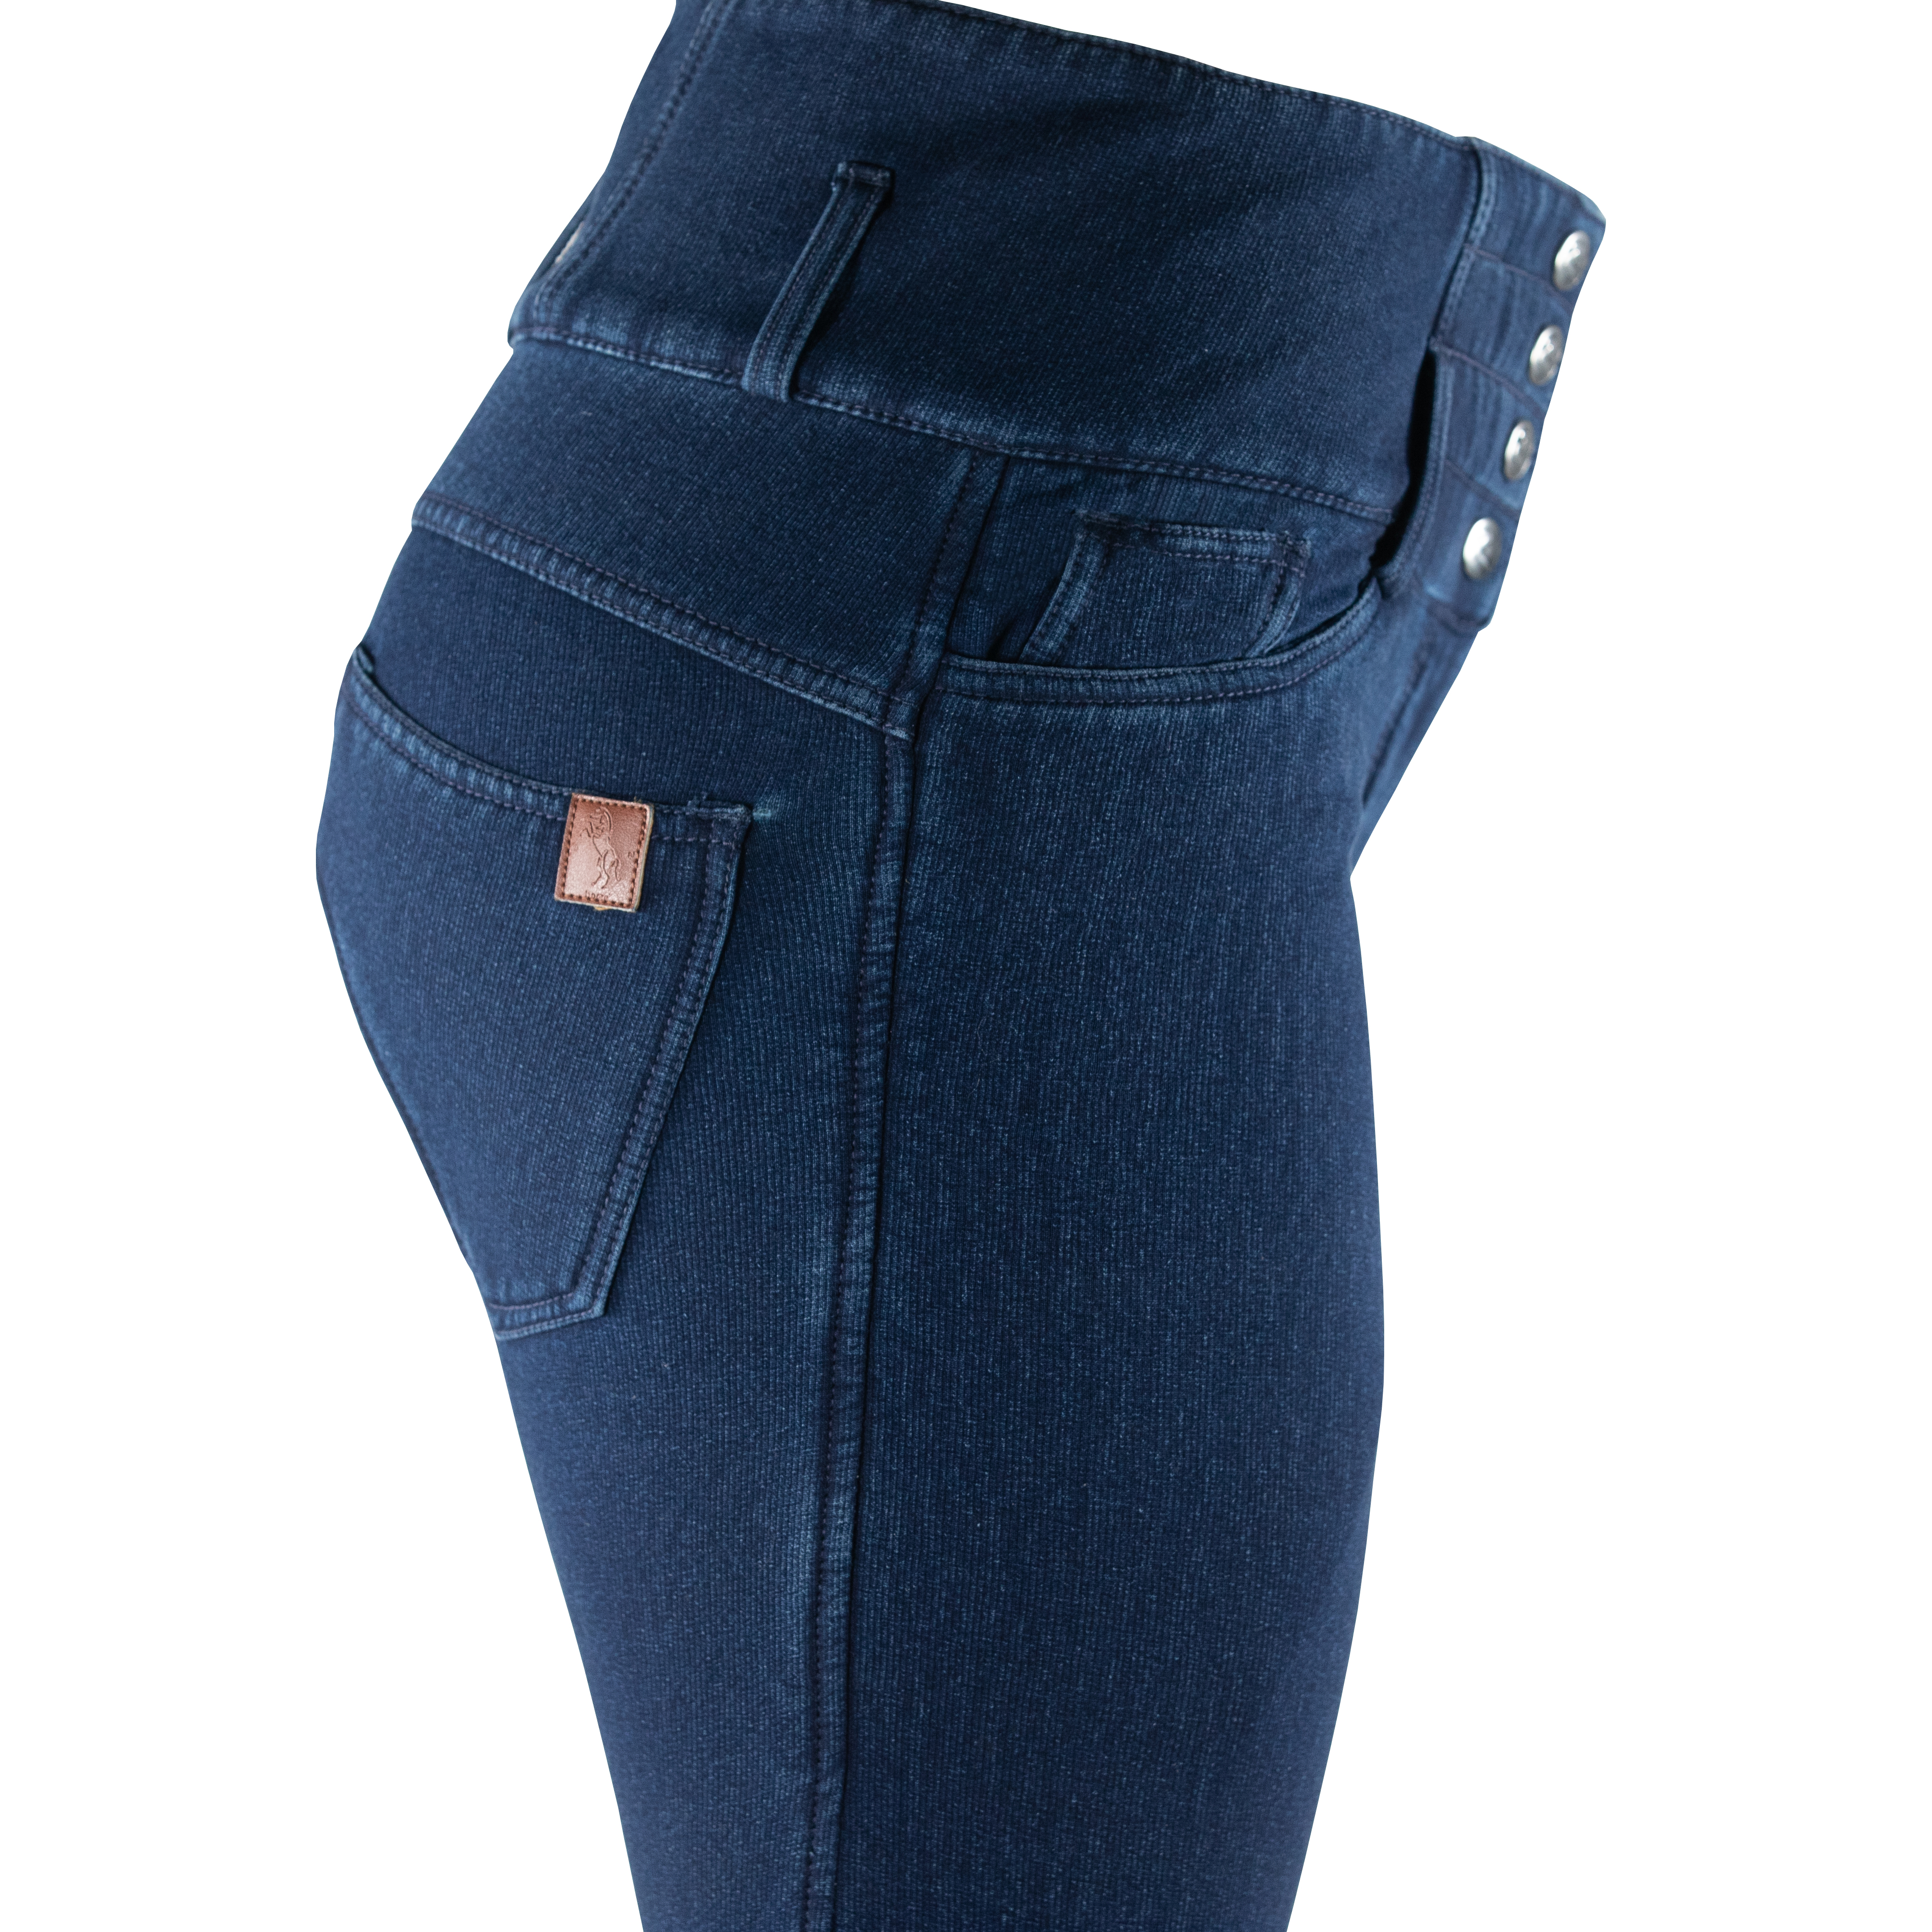 Bryczesy Horze Kasey jeans z polarową podszewką lej silikonowy Edycja Limitowana